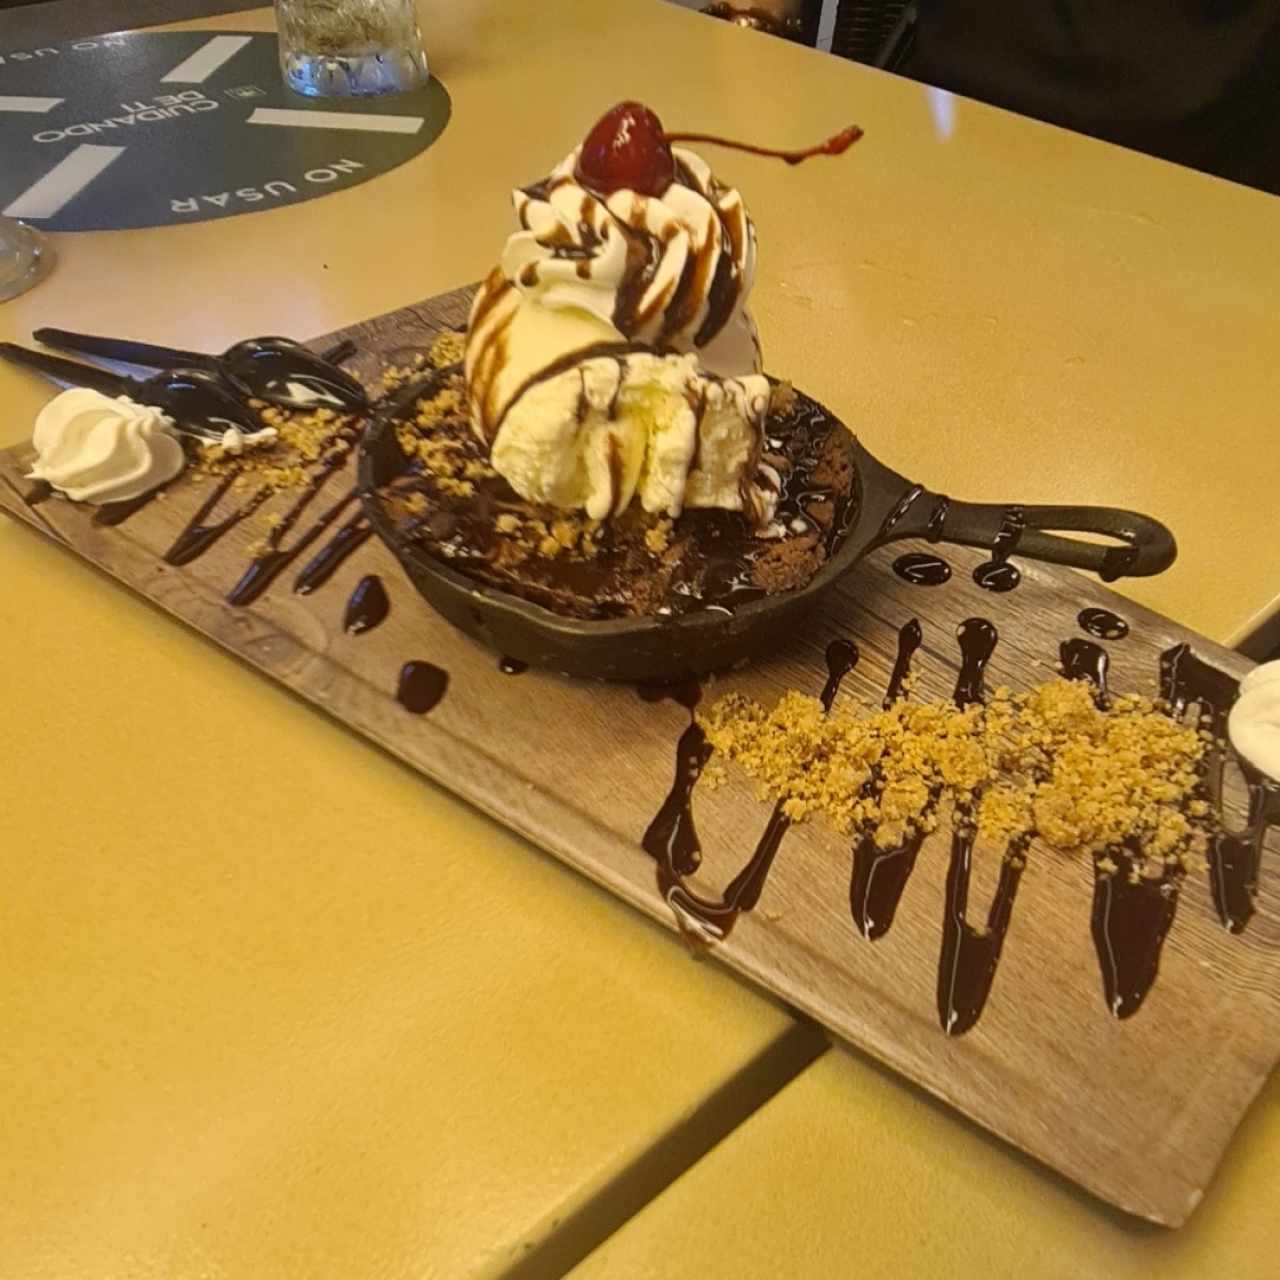 Desserts - Hot Fudge Brownie